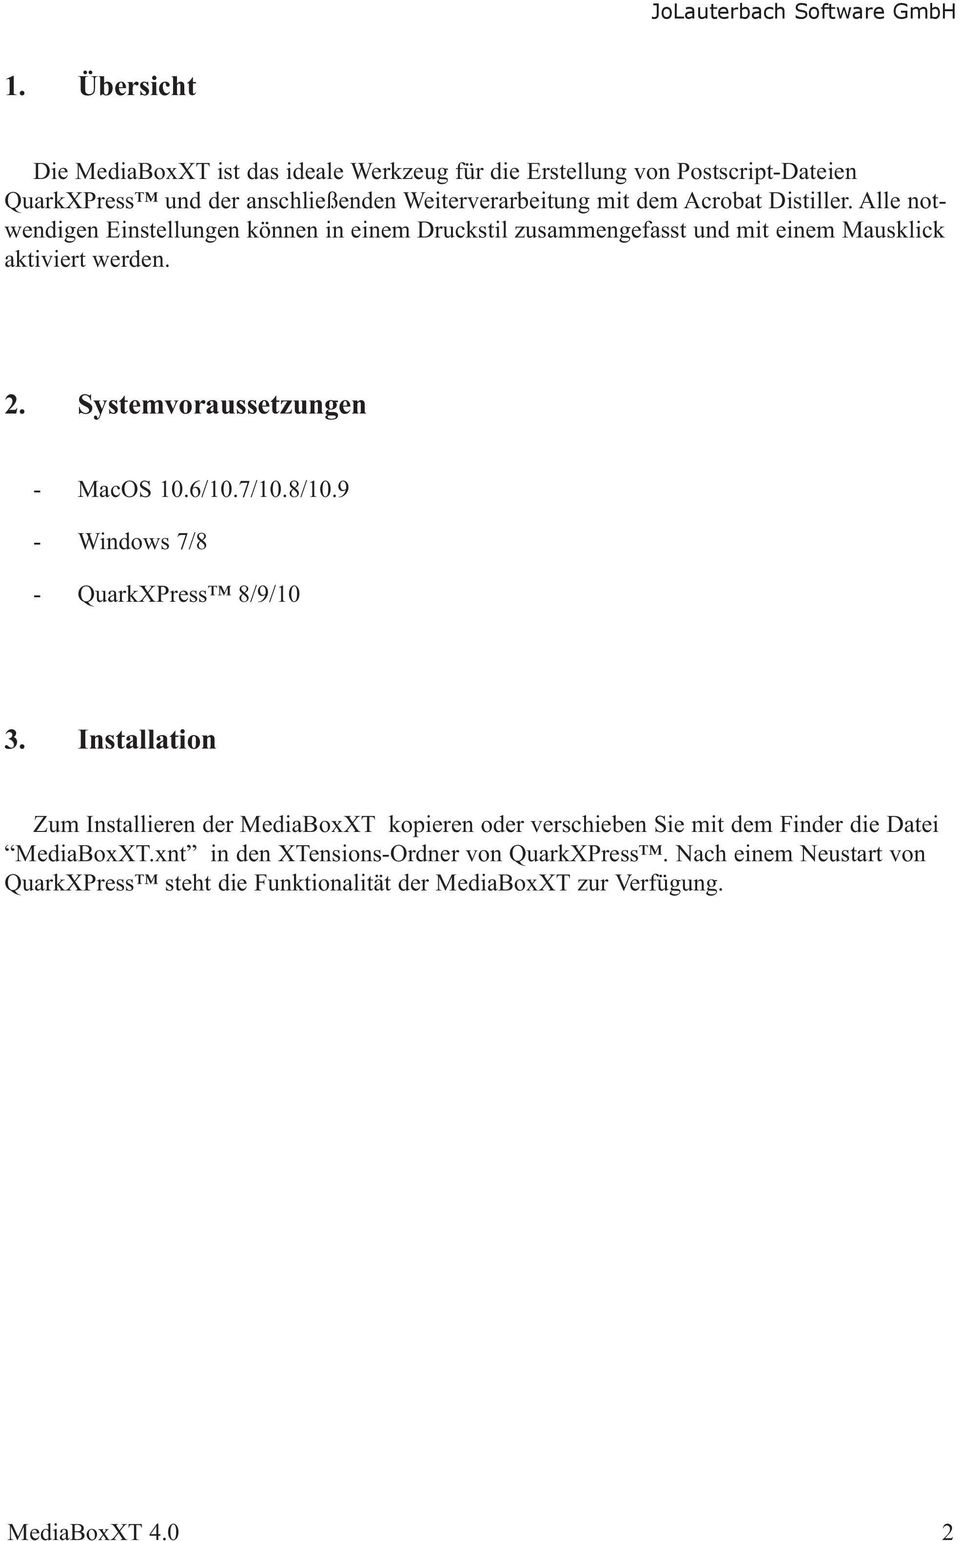 Systemvoraussetzungen - MacOS 10.6/10.7/10.8/10.9 - Windows 7/8 - QuarkXPress 8/9/10 3.